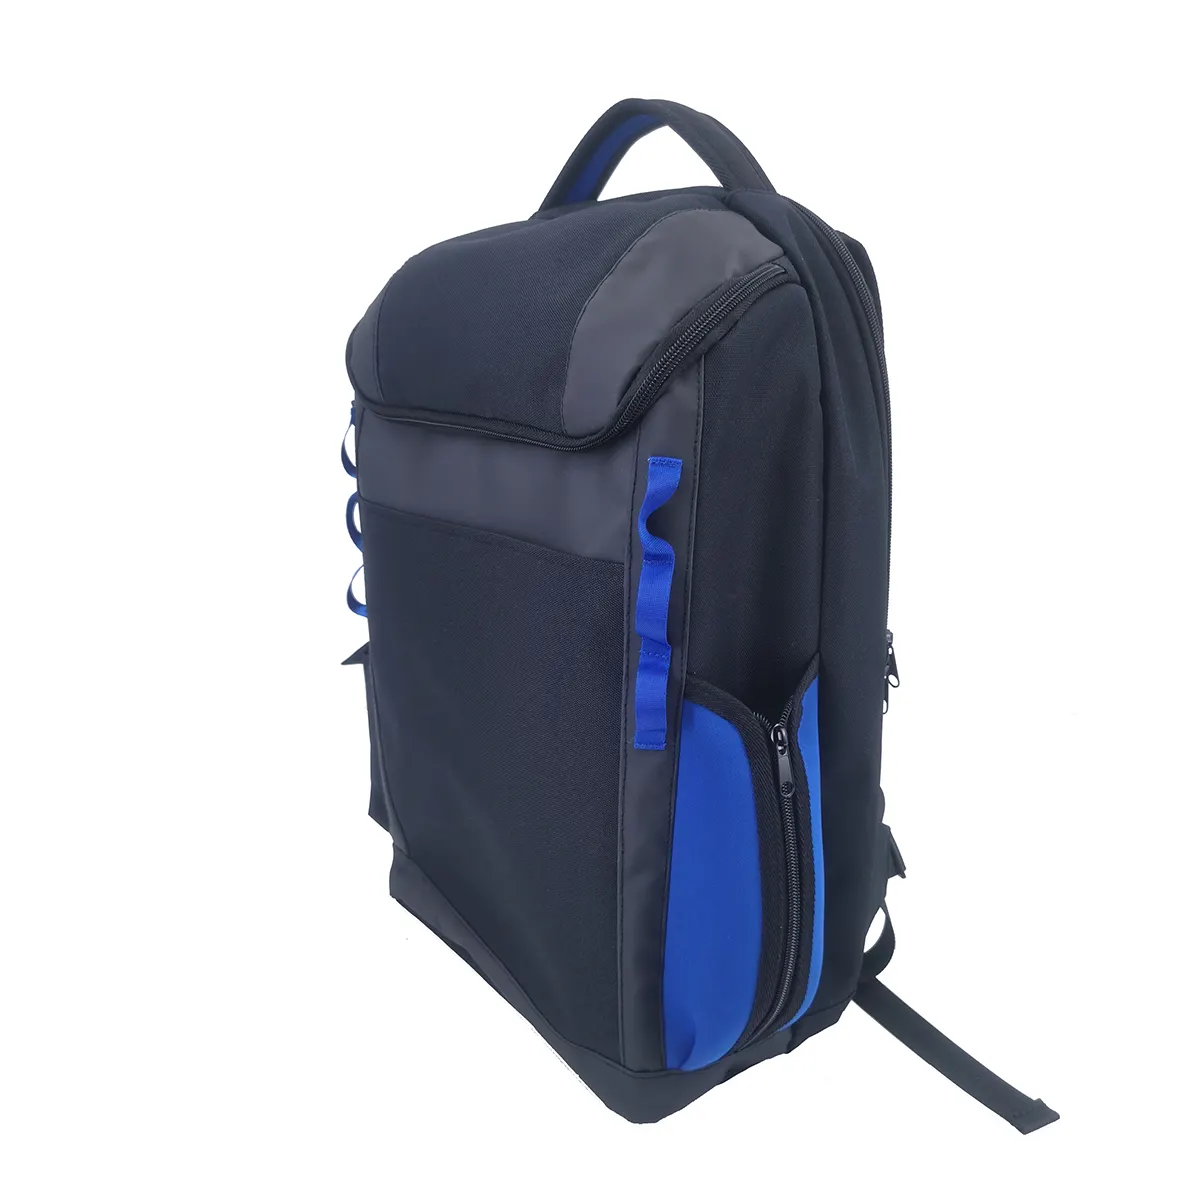 Zwei große Aufbewahrungsbereiche individuelle 3 in 1 Laptop-Tasche mit mehrfarbigem Laptop-Rucksack Outdoor Reisen Wandern Schultasche wasserdicht